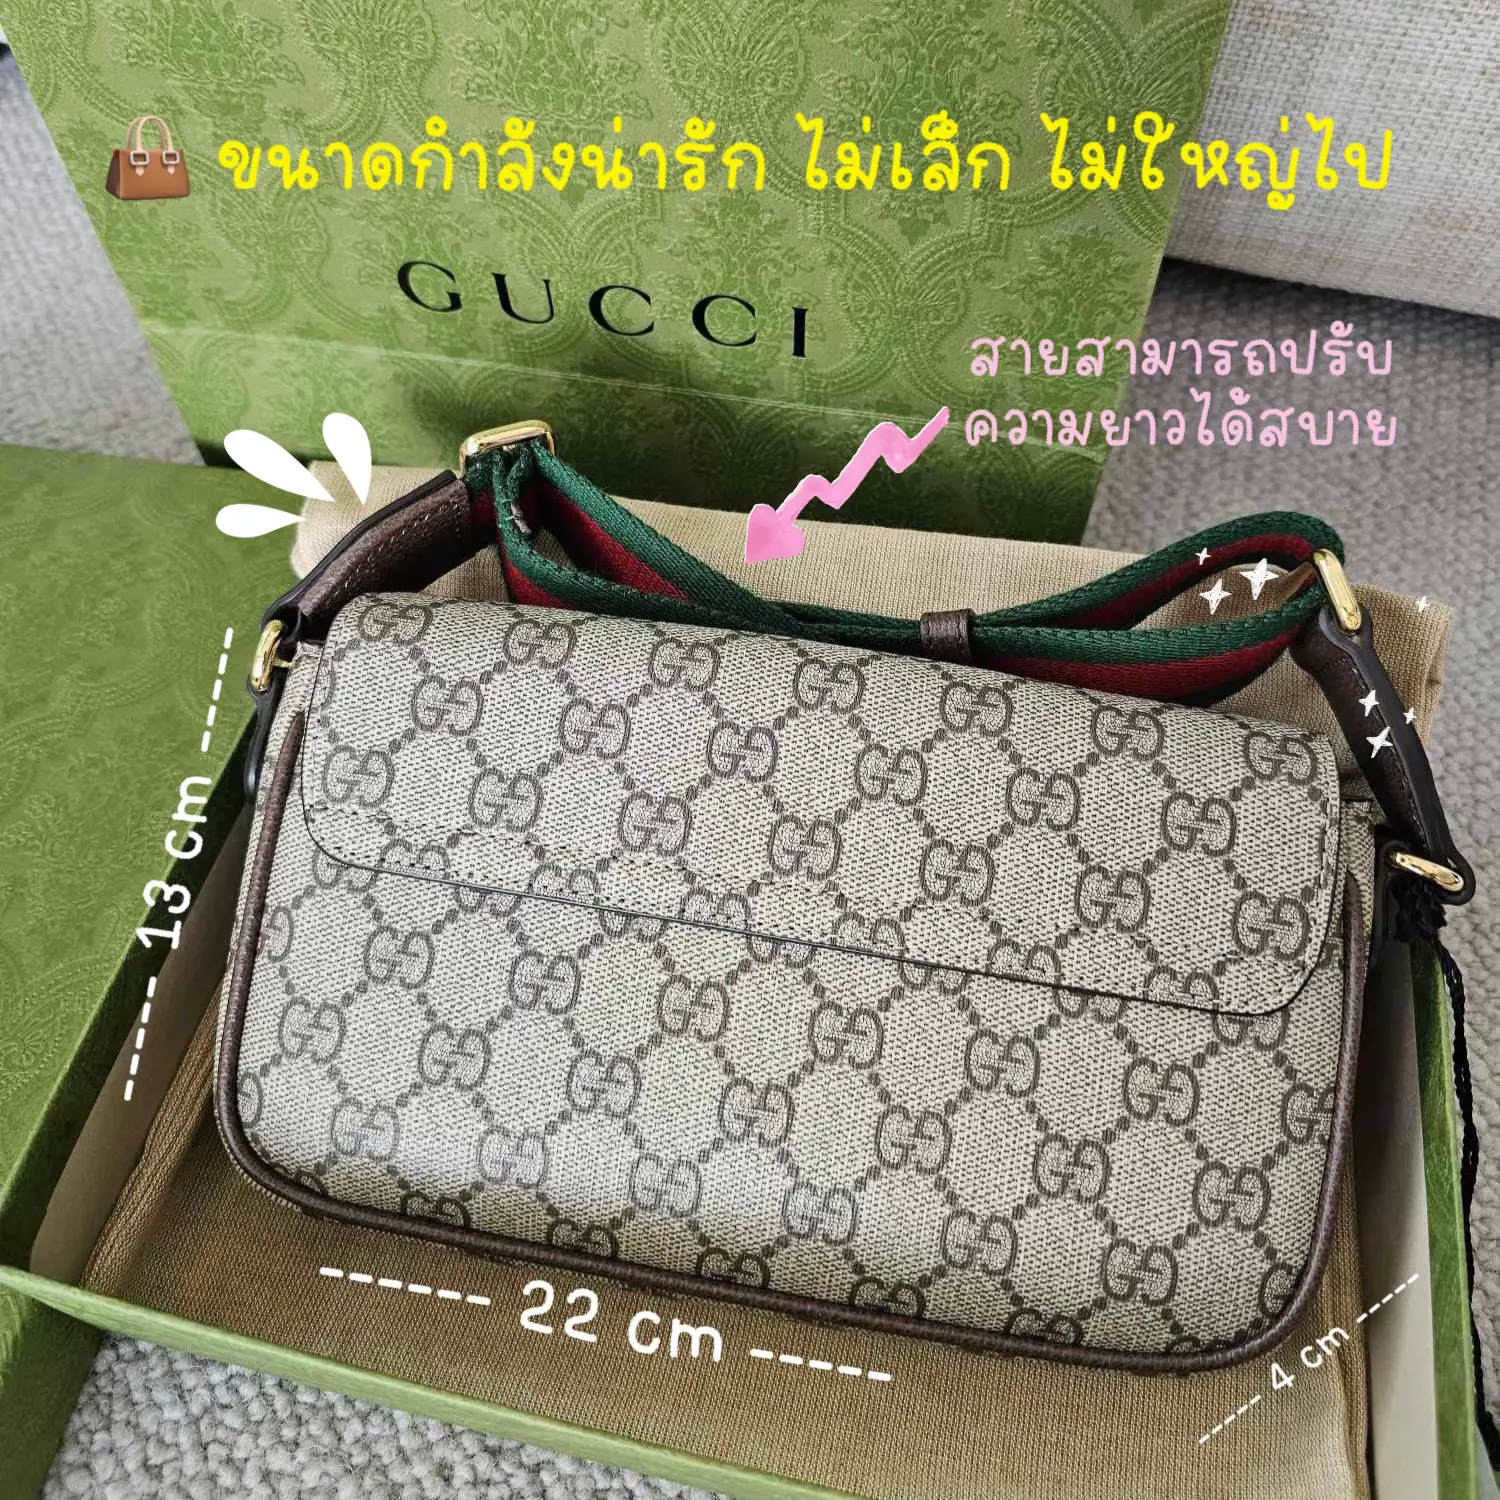 Cheap & Fashion Gg Bags - Dhg8